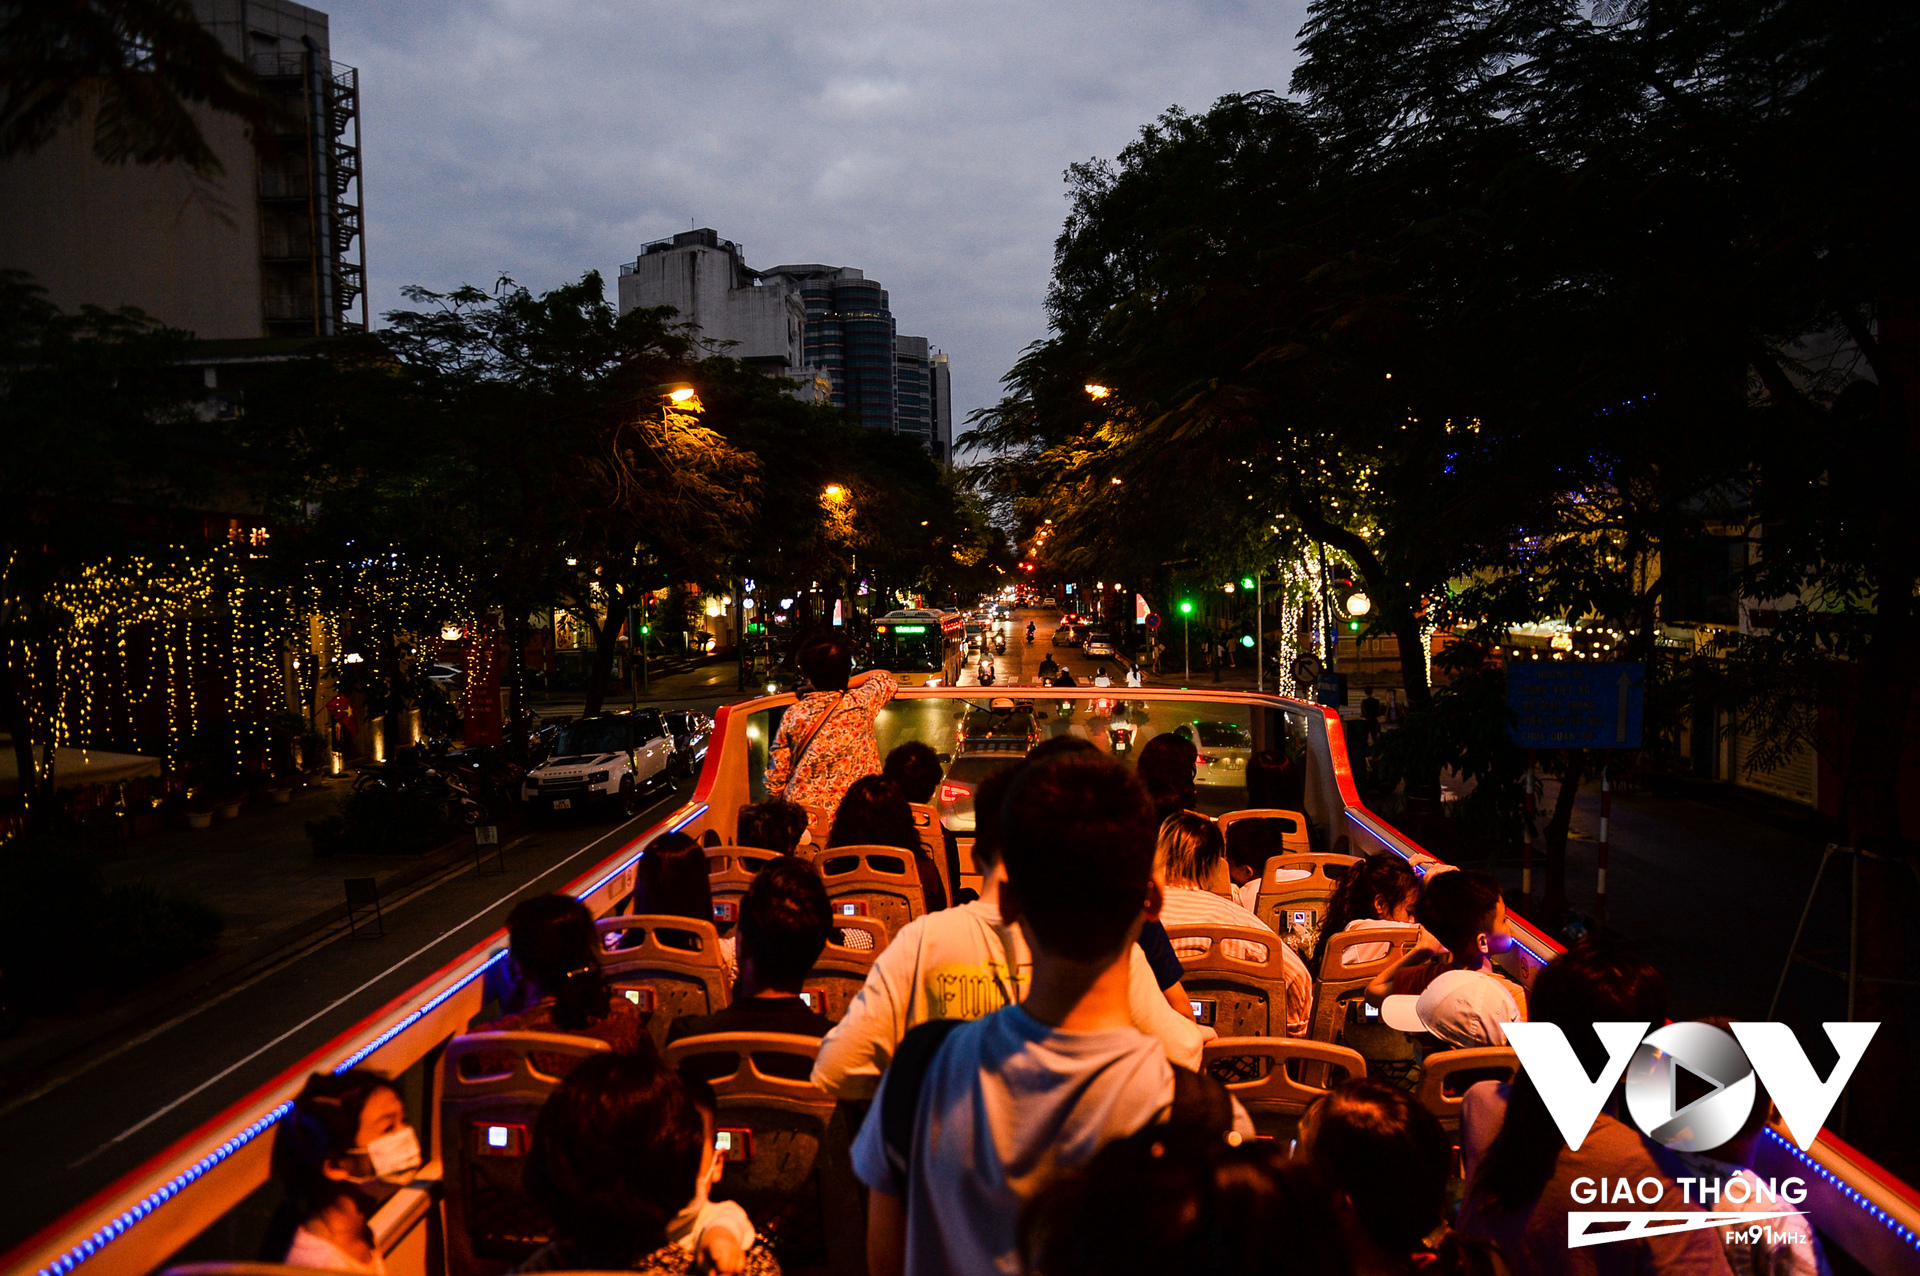 Sau khoảng 40' đi qua nhiều địa điểm, danh thắng nổi tiếng của Hà Nội chuyến xe buýt 2 tầng đưa du khách dần quay chở về điểm ban đầu. Lúc này, trời bắt đầu tối, đường phố Hà Nội lên đèn lung linh, càng làm cho chuyến đi thêm hấp dẫn.